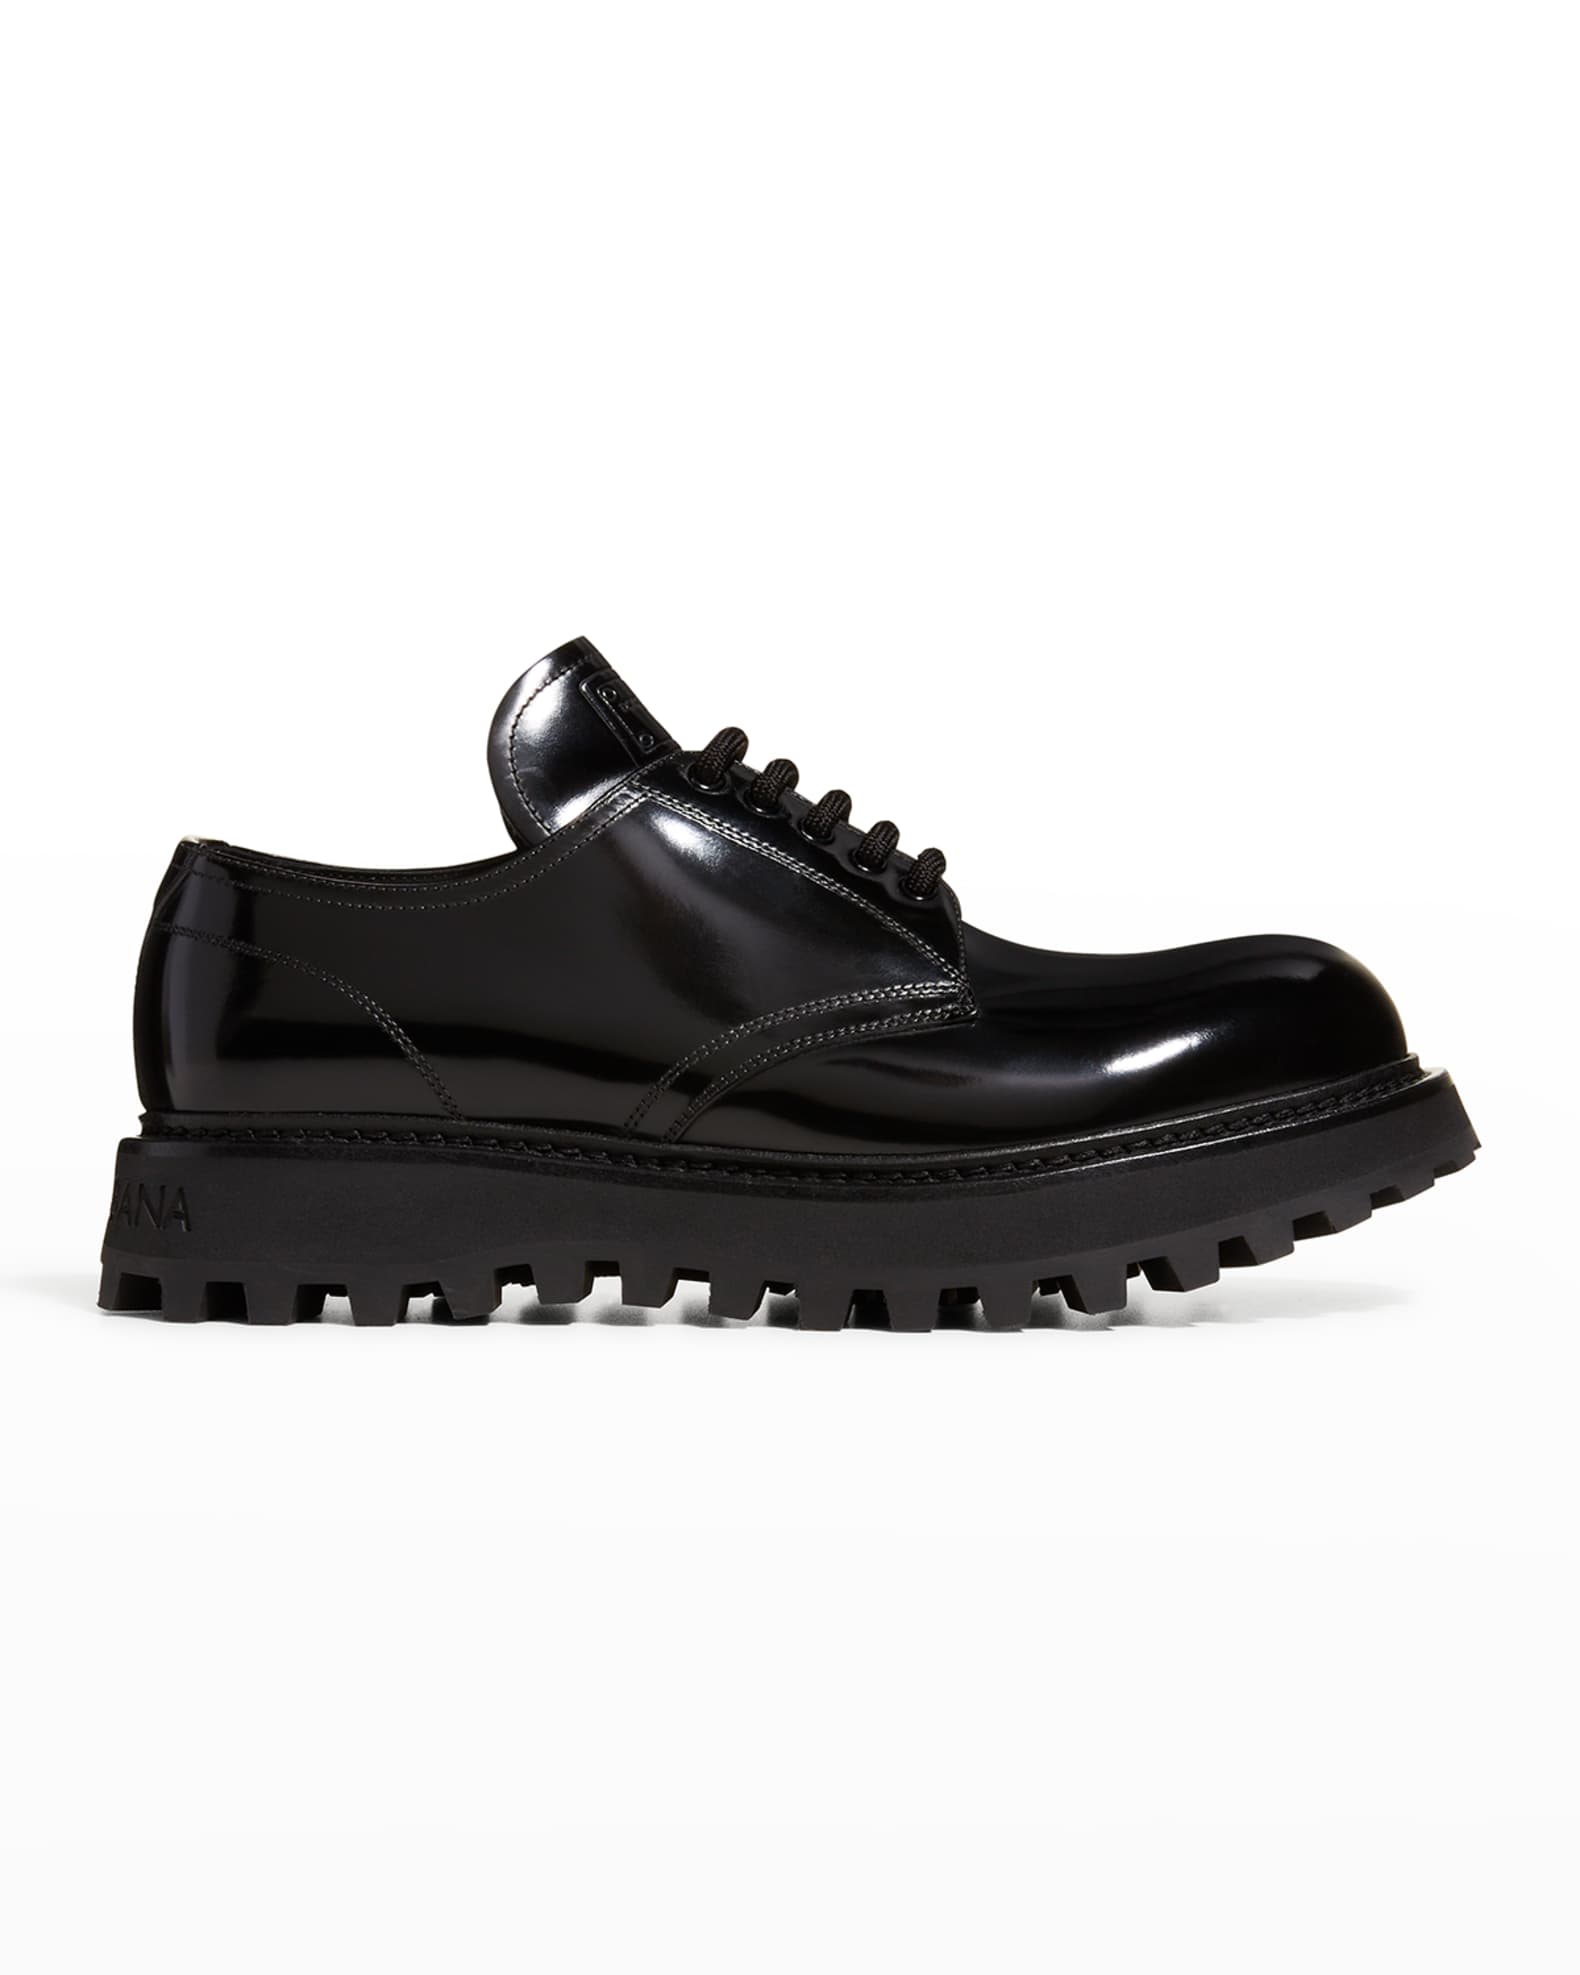 Dolce&Gabbana Men's Bernini Patent Lug-Sole Derby Shoes | Neiman Marcus